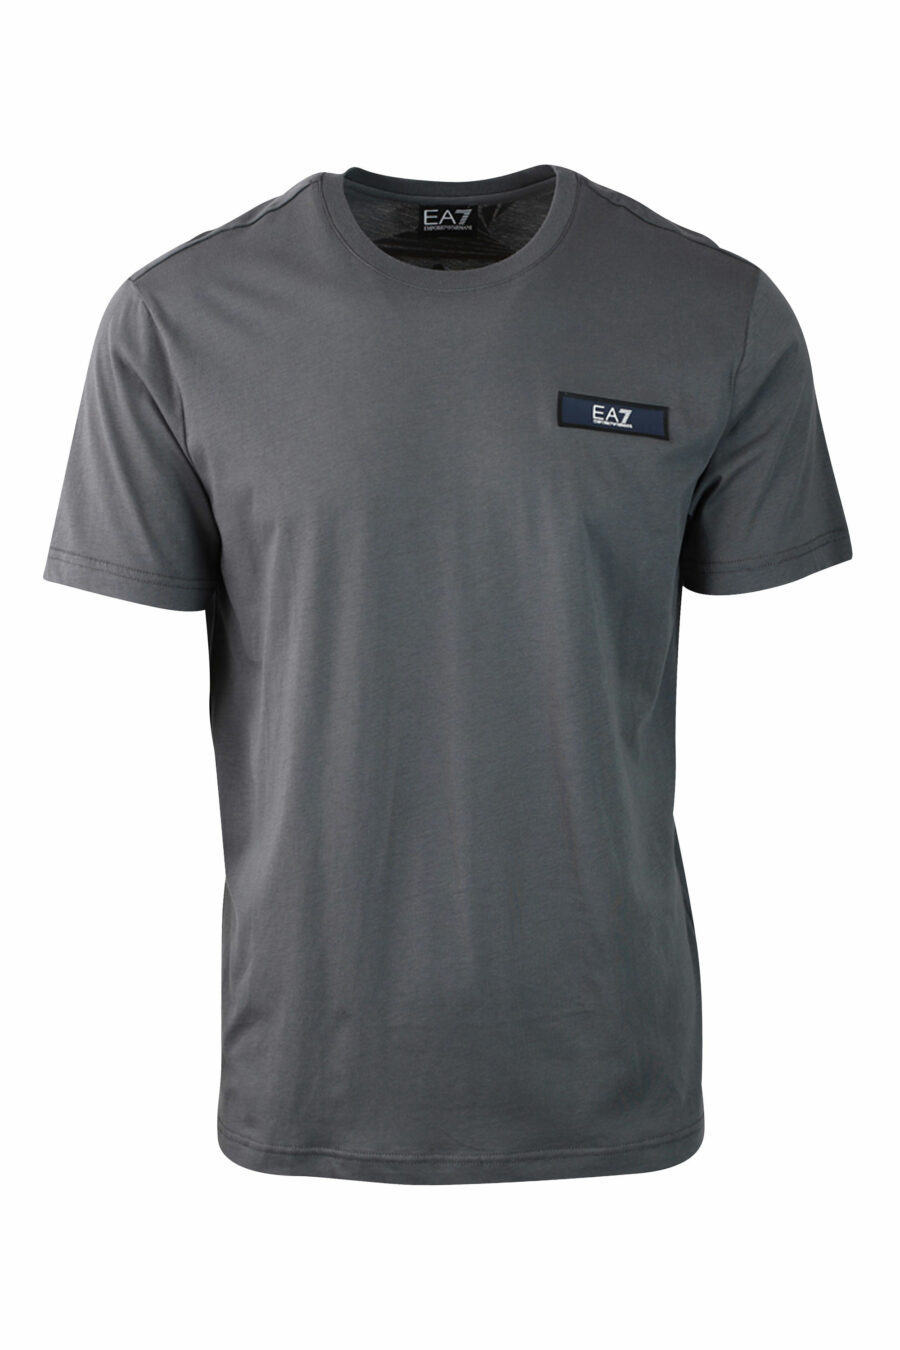 Camiseta gris con minilogo en parche rectangular - IMG 0107